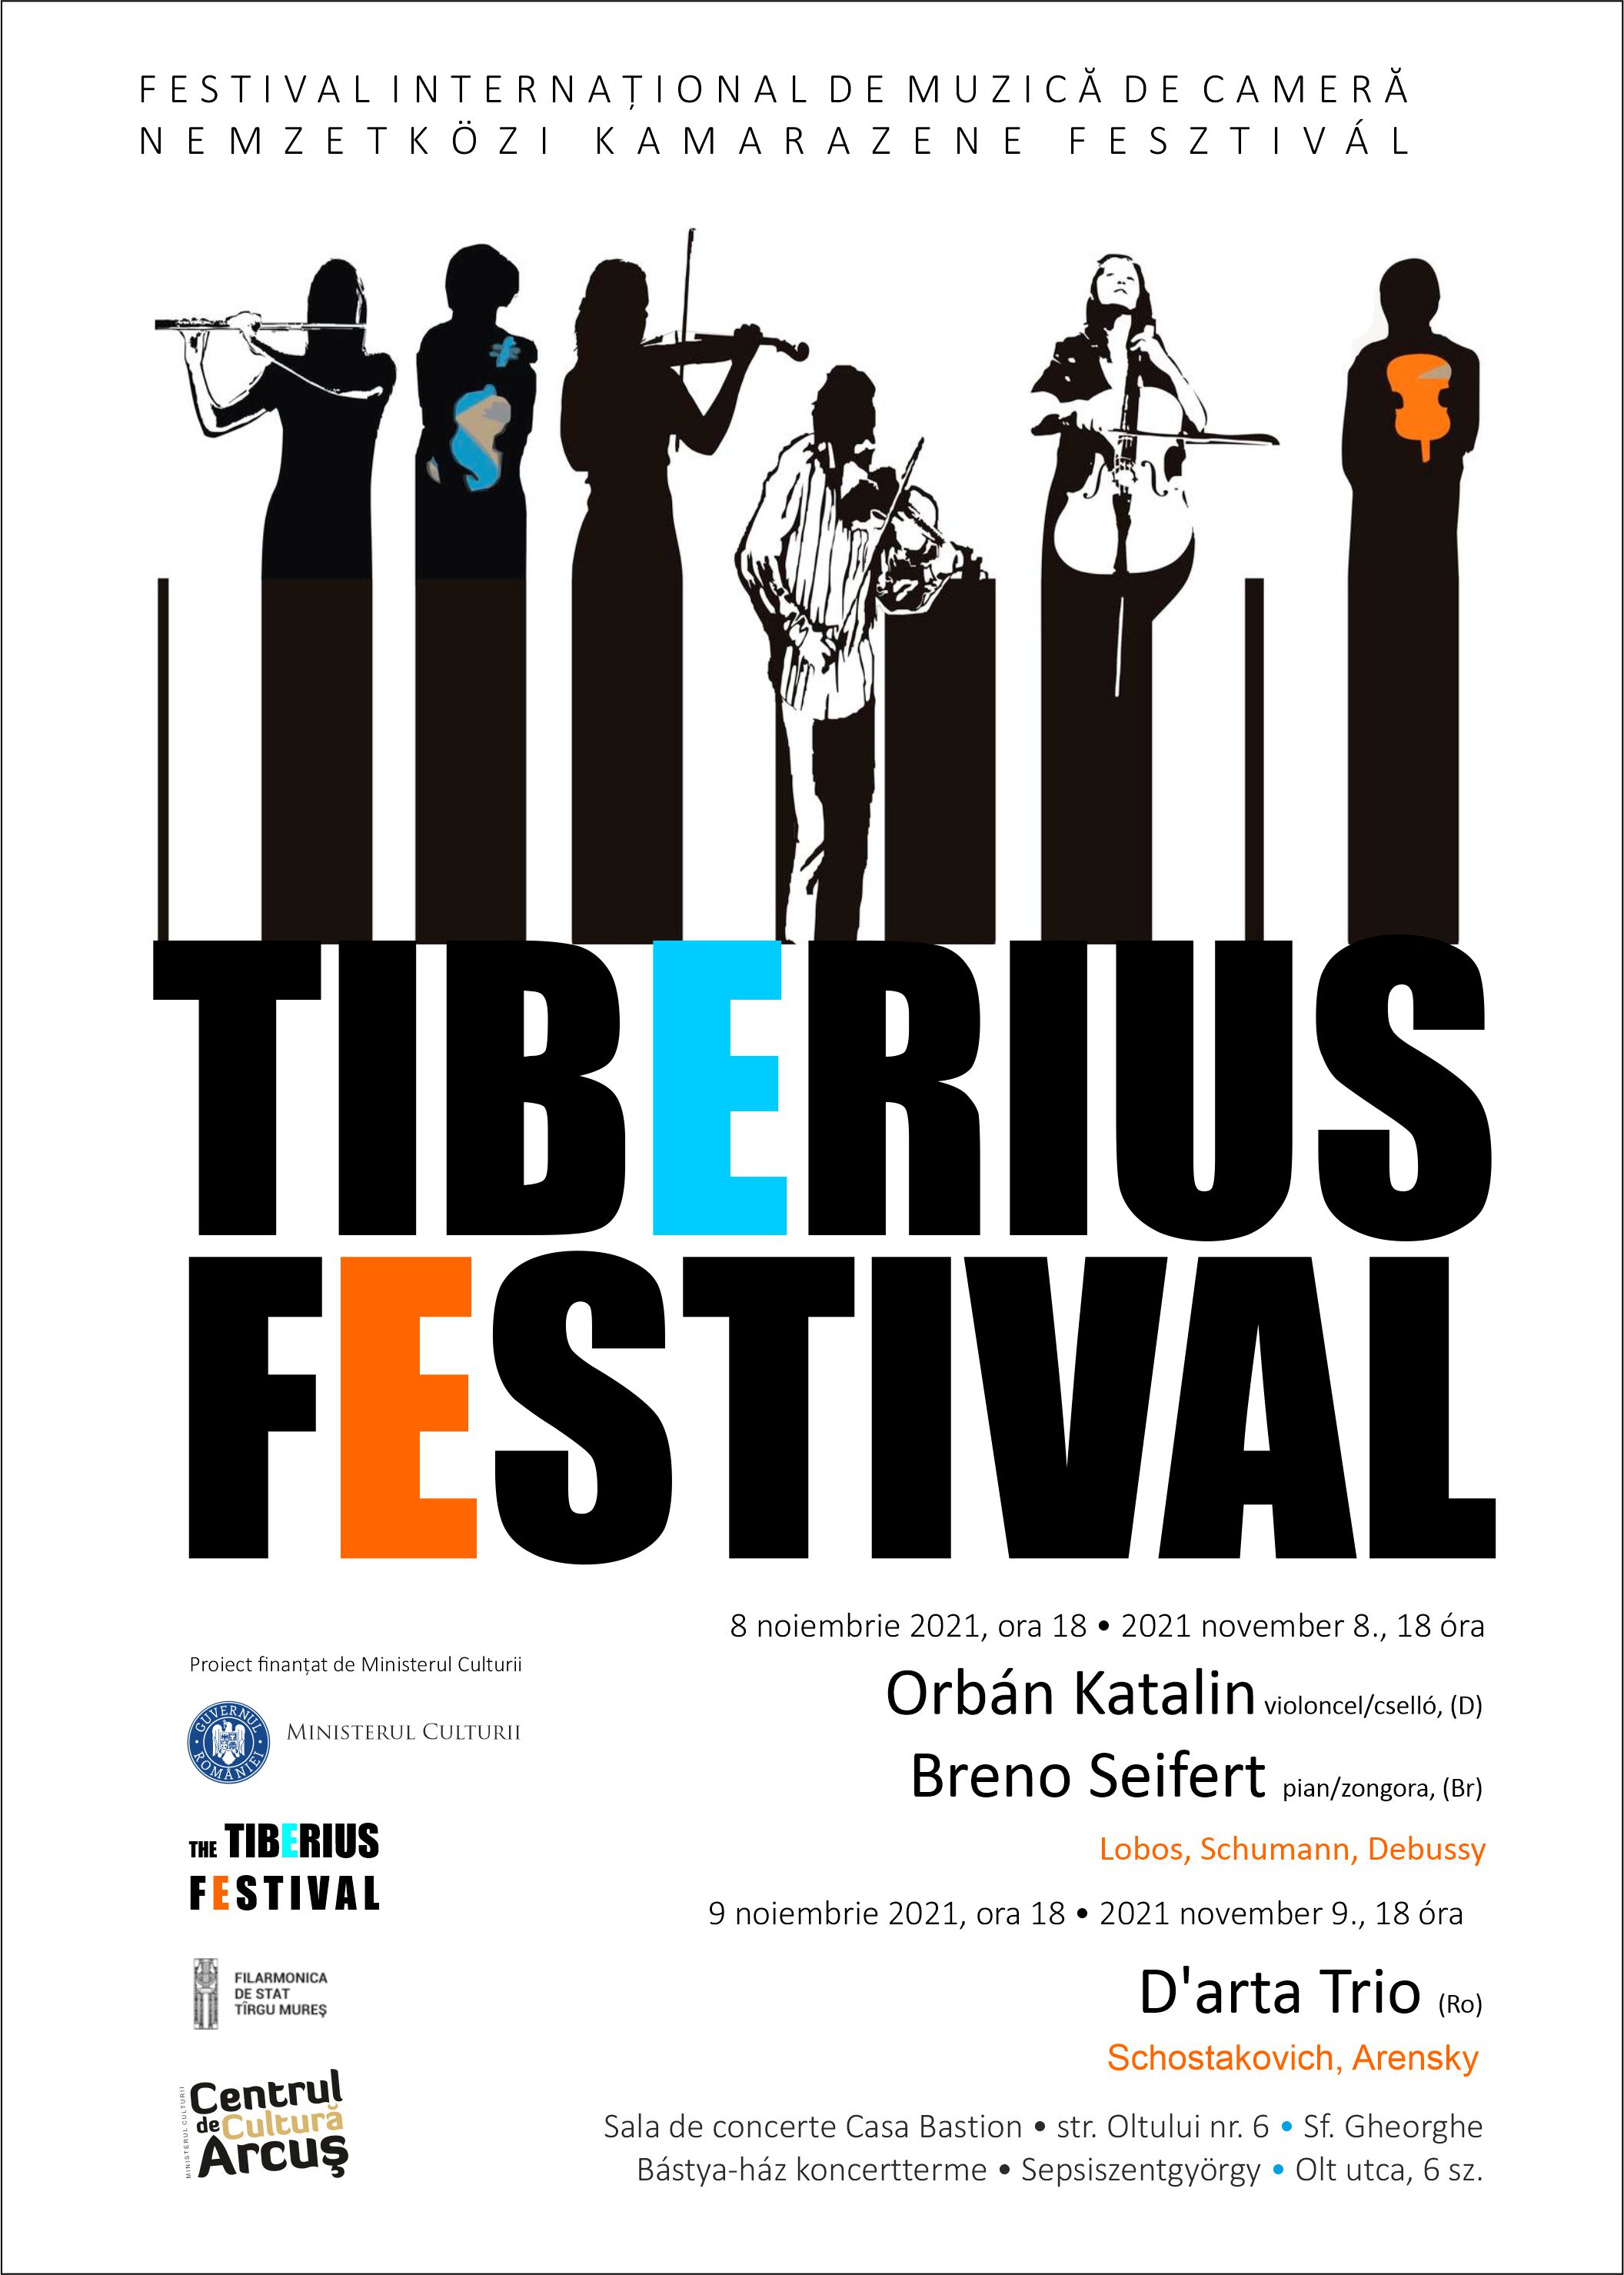 Tiberius Festival - Nemzetközi Kamarazene Fesztivál